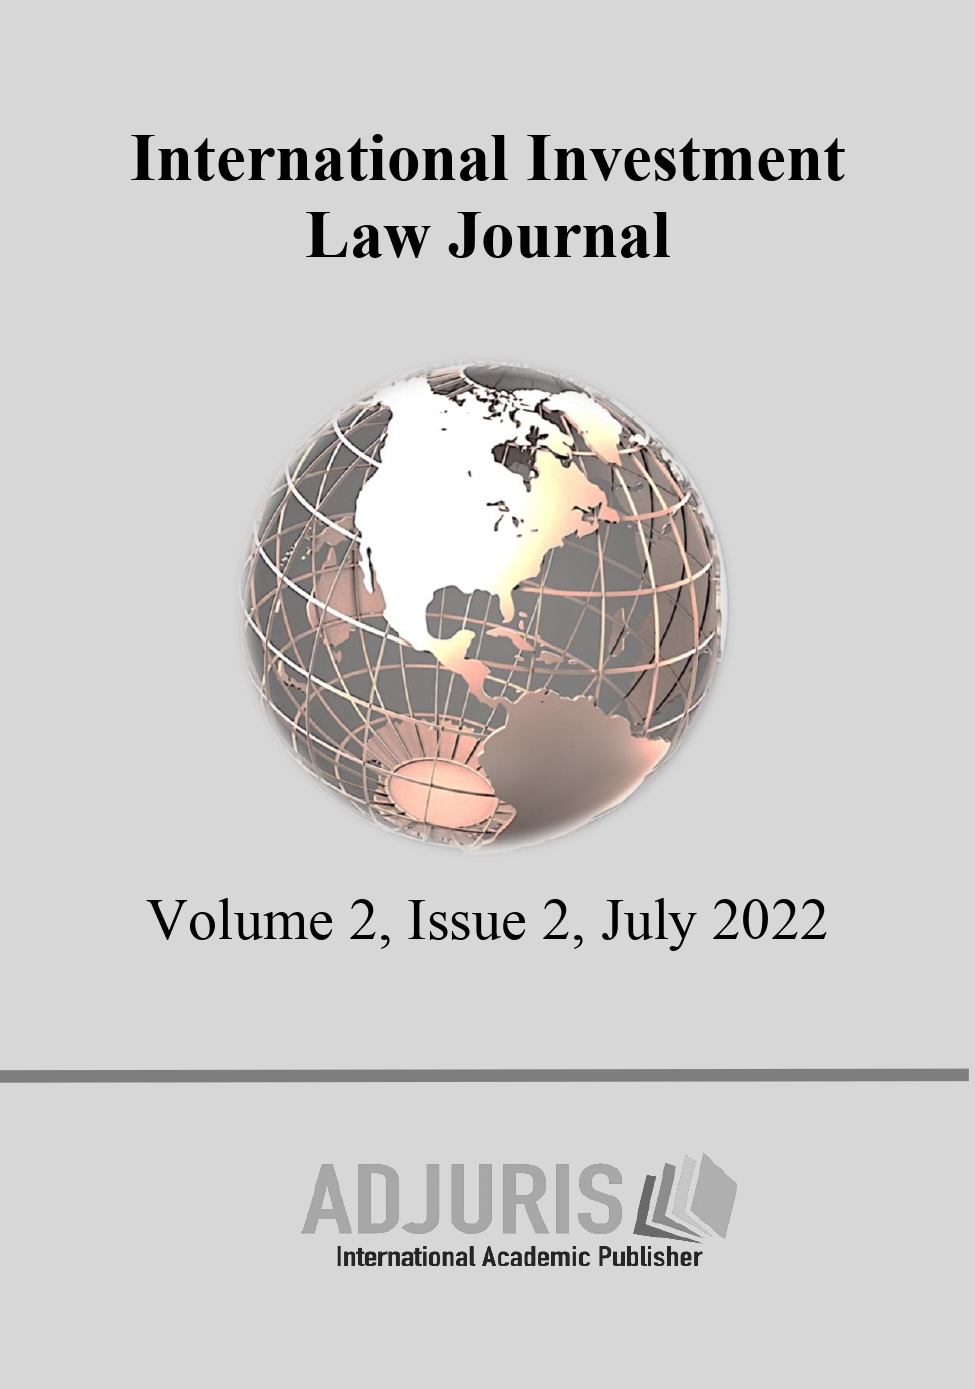 Iura Novit Curia versus Iura Novit Arbiter in International Arbitration